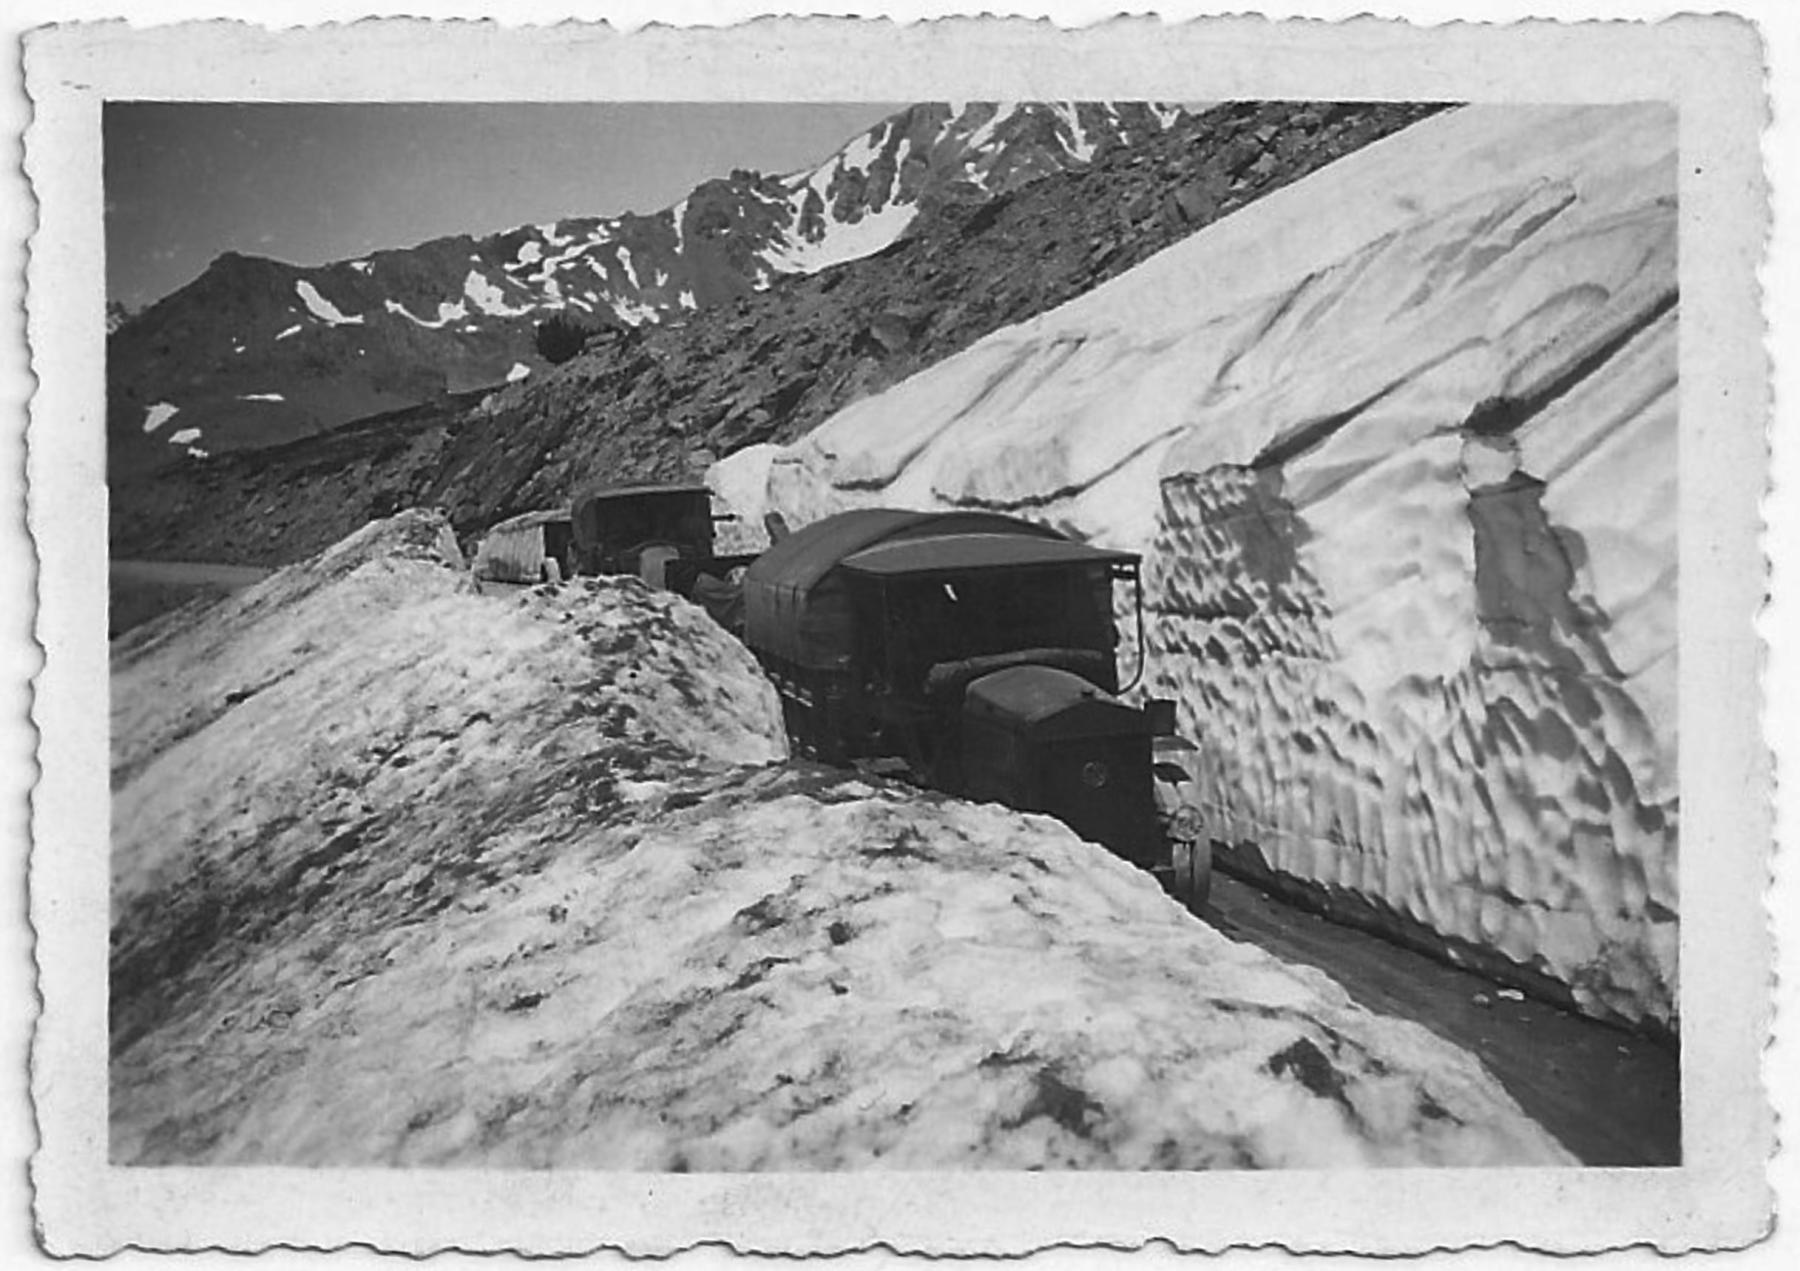 Ligne Maginot - 164° Régiment d'Artillerie de Position (164° RAP) - Col du Granon
Juillet 1937